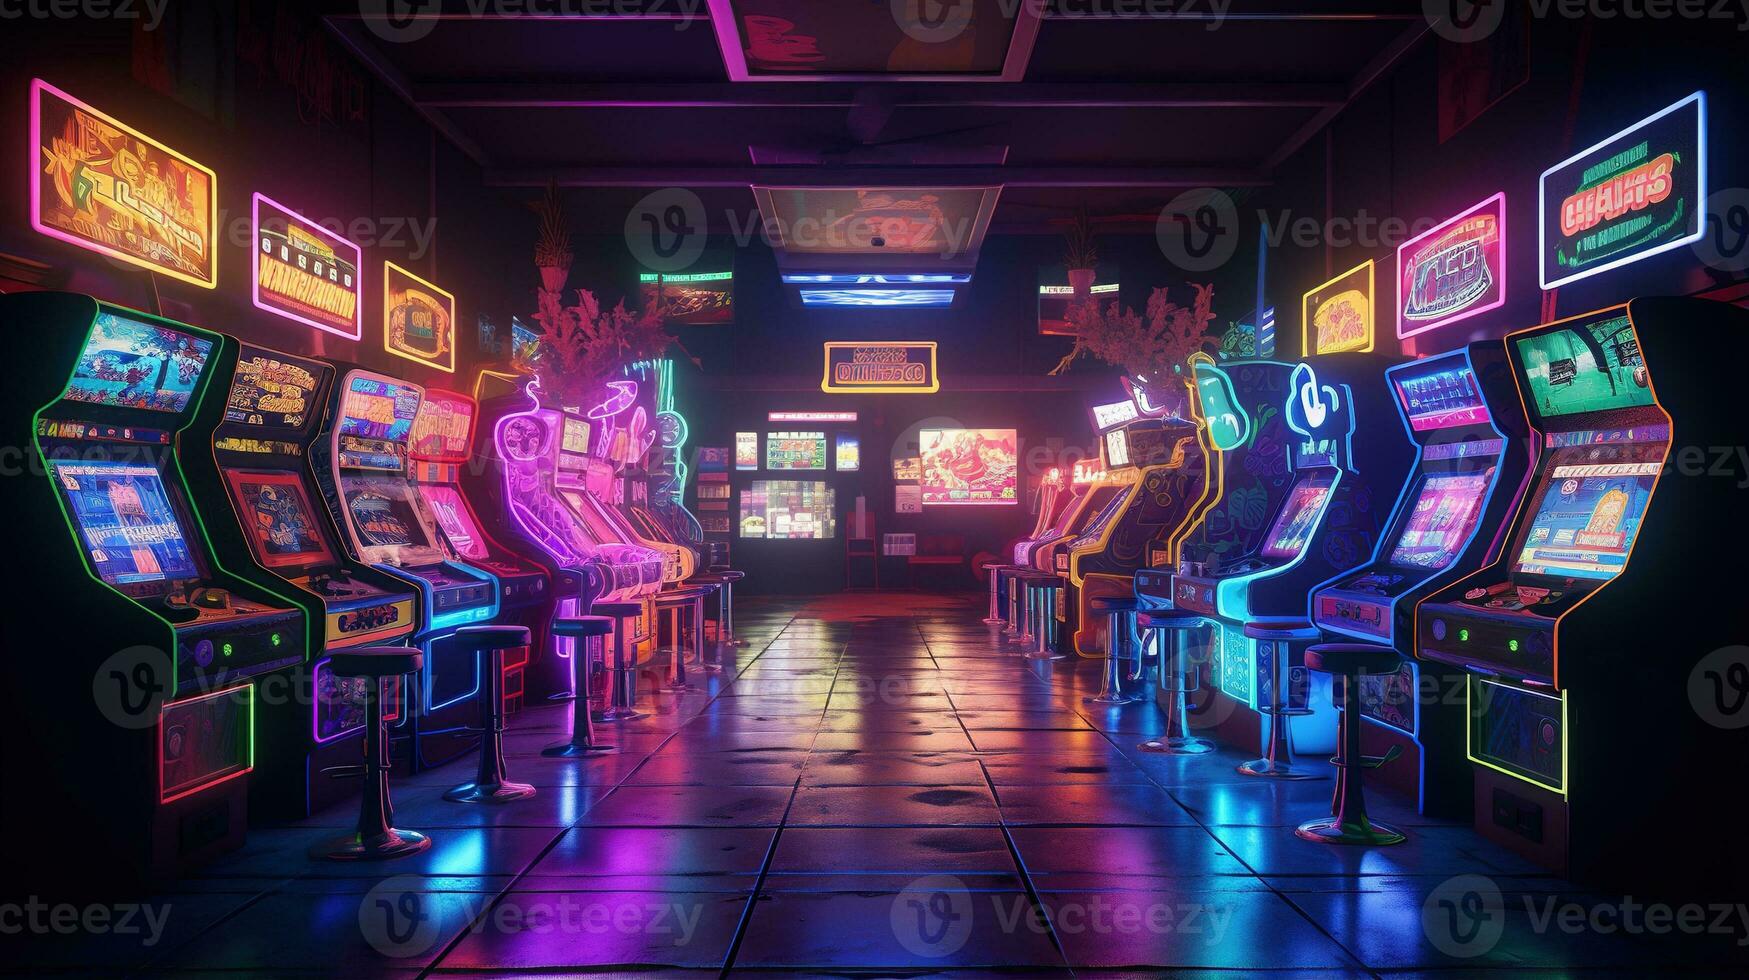 generatief ai, cyberpunk stijl spel bar of cafe. nacht tafereel van groot stad, futuristische nostalgisch jaren 80, jaren 90. neon lichten levendig kleuren, fotorealistisch horizontaal foto